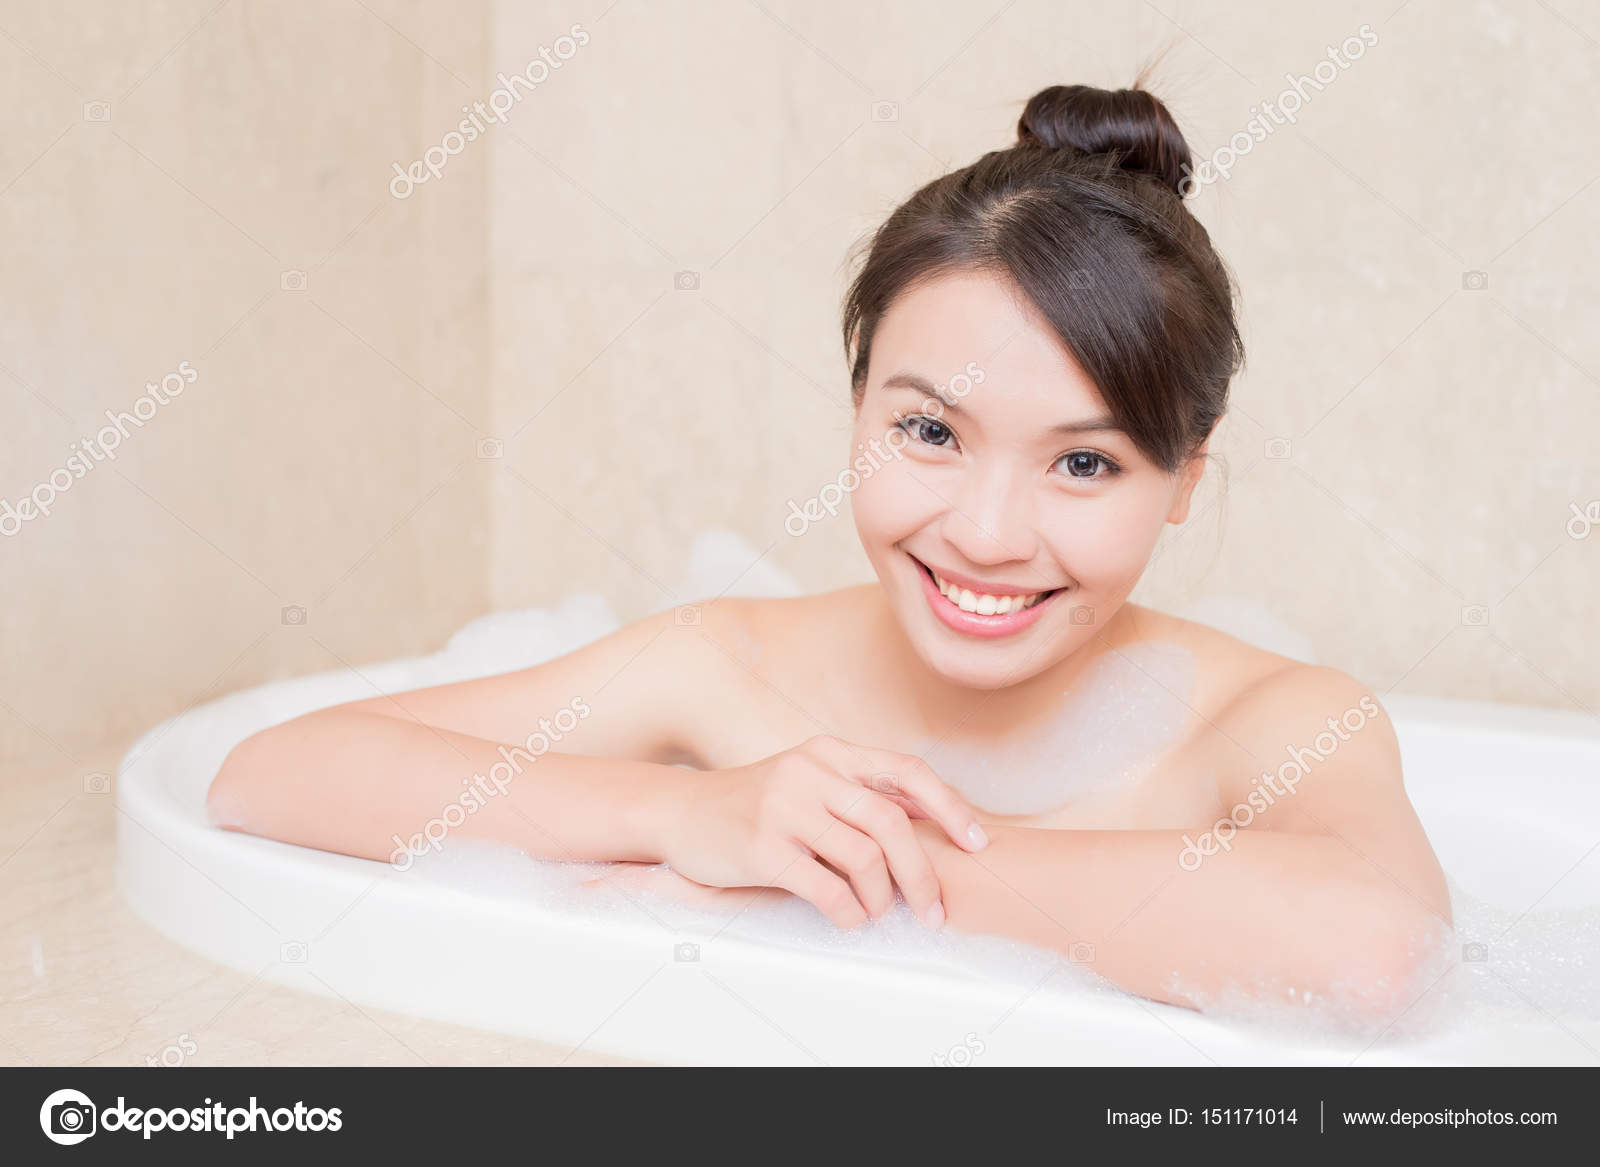 Beautiful Woman Taking Bath Stock Photo By Ryanking